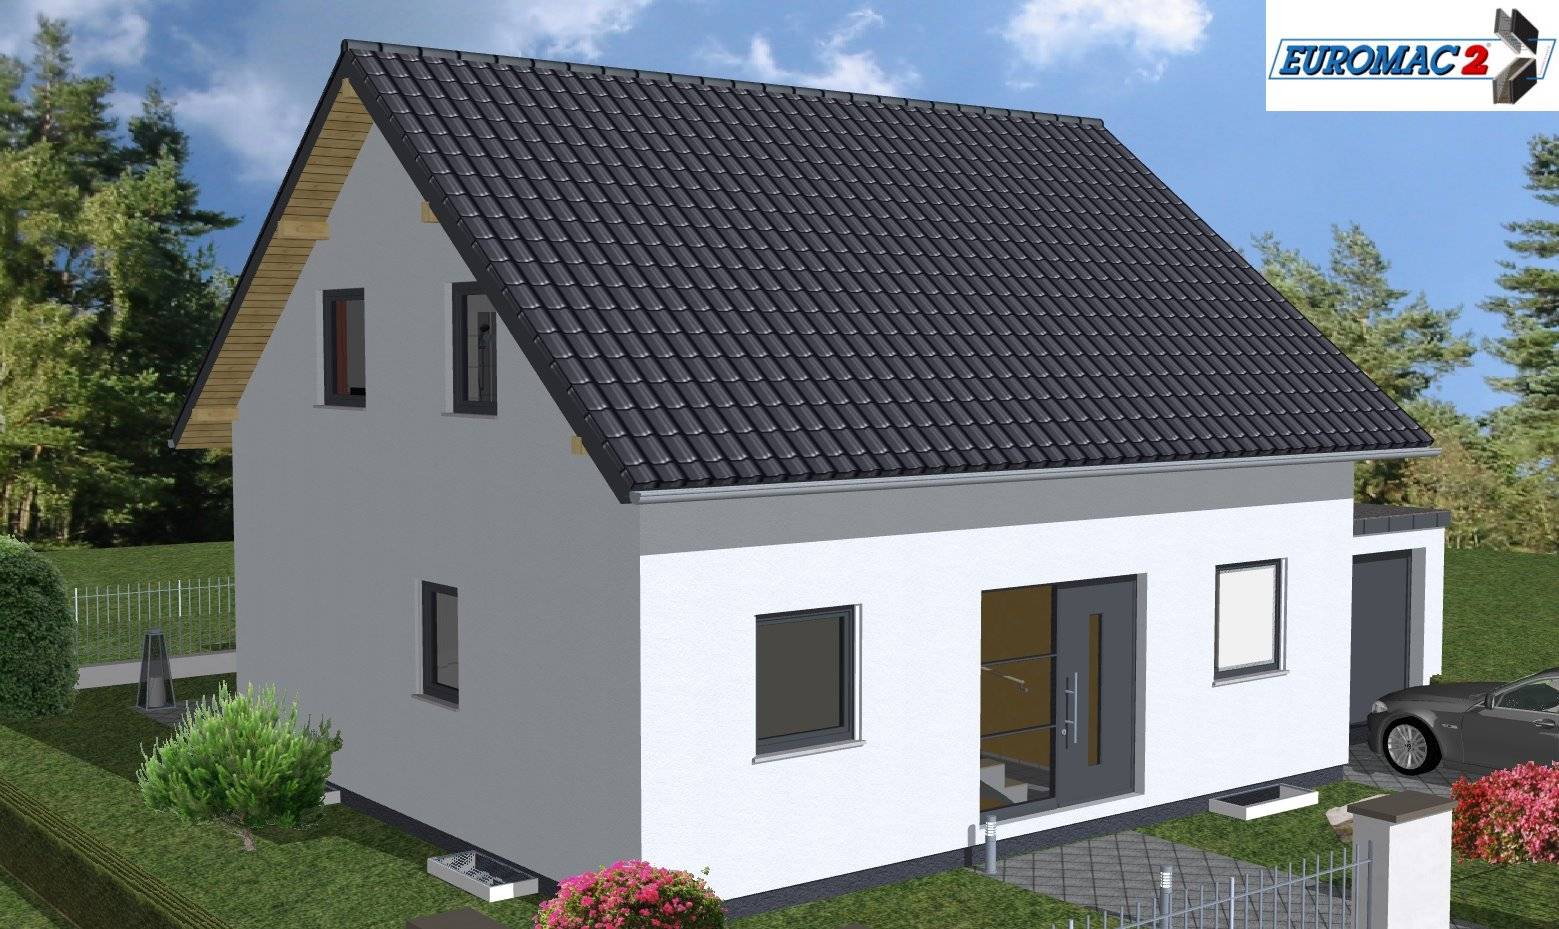 Massivhaus Family 125 SD von EUROMAC 2 S.A.S. Bausatzhaus ab 39788€, Satteldach-Klassiker Außenansicht 1